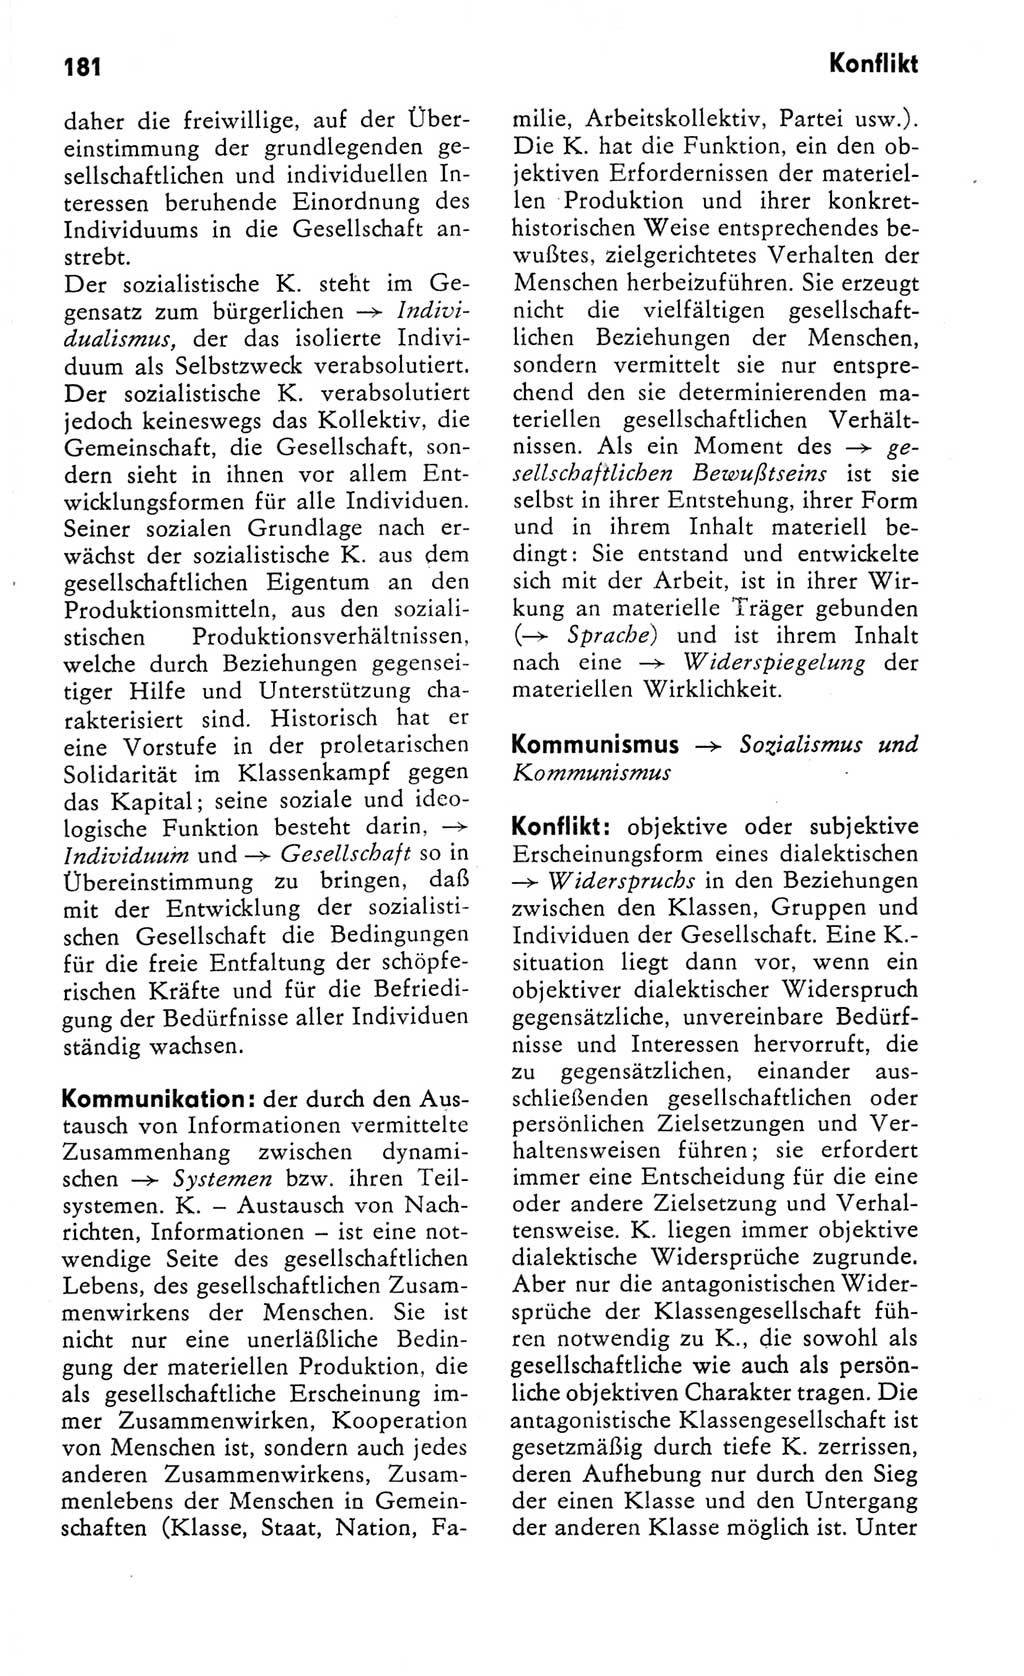 Kleines Wörterbuch der marxistisch-leninistischen Philosophie [Deutsche Demokratische Republik (DDR)] 1982, Seite 181 (Kl. Wb. ML Phil. DDR 1982, S. 181)